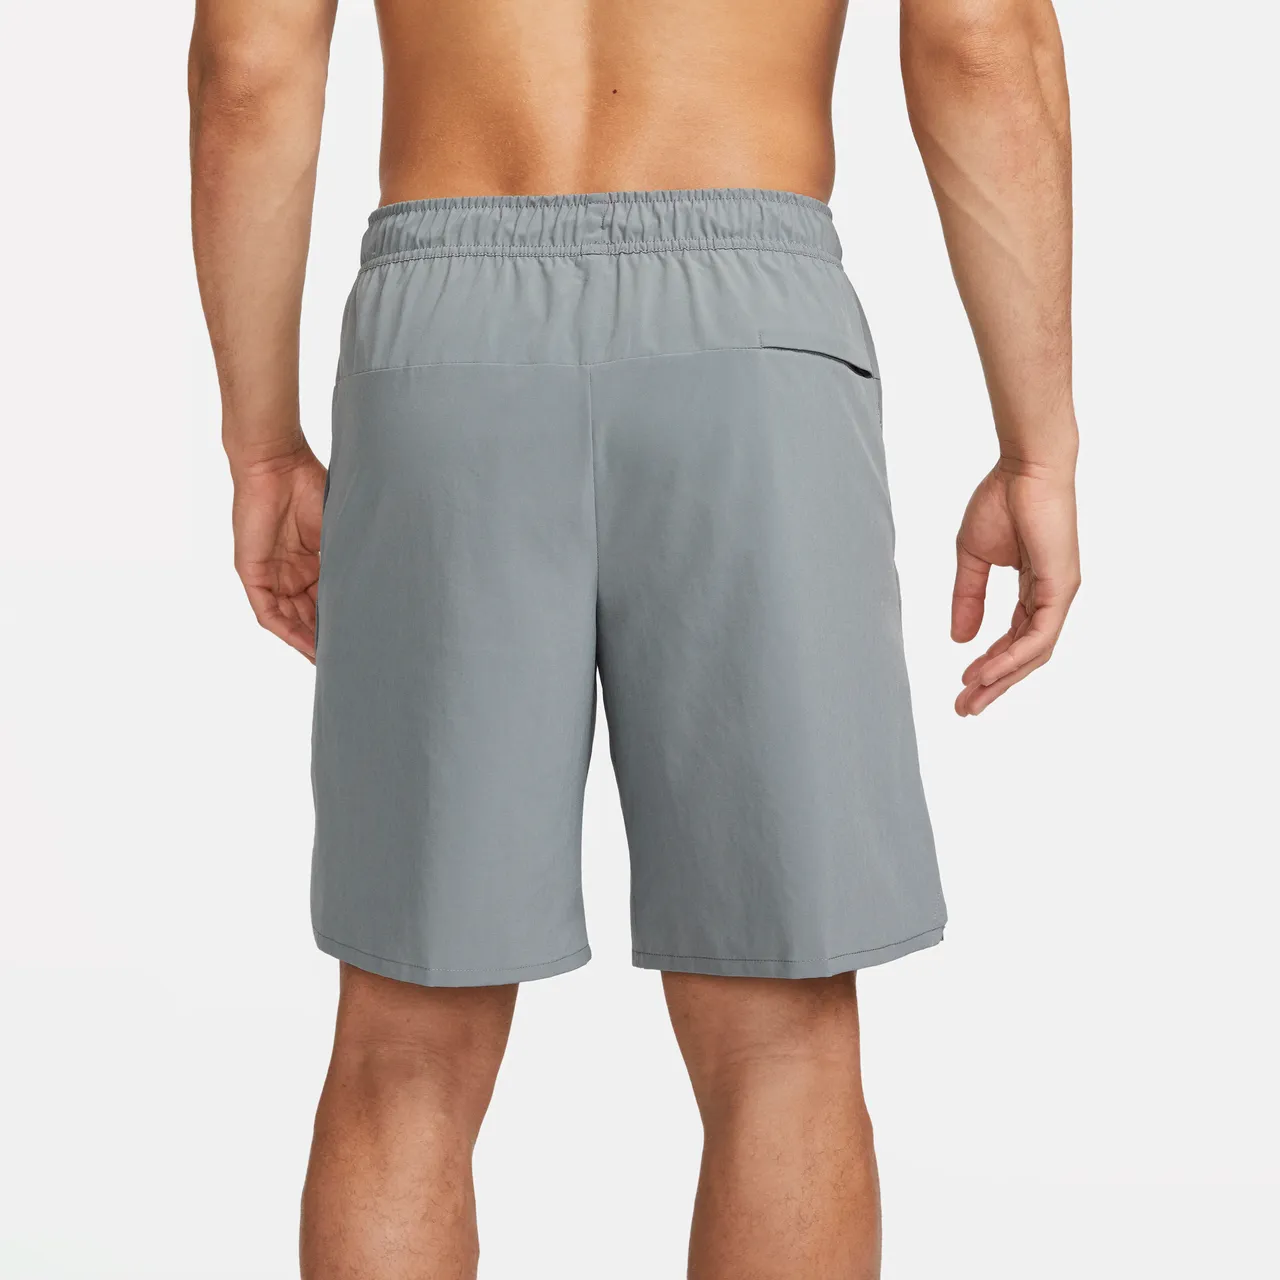 Nike Unlimited vielseitige Dri-FIT Herrenshorts ohne Futter (ca. 23 cm) - Grau